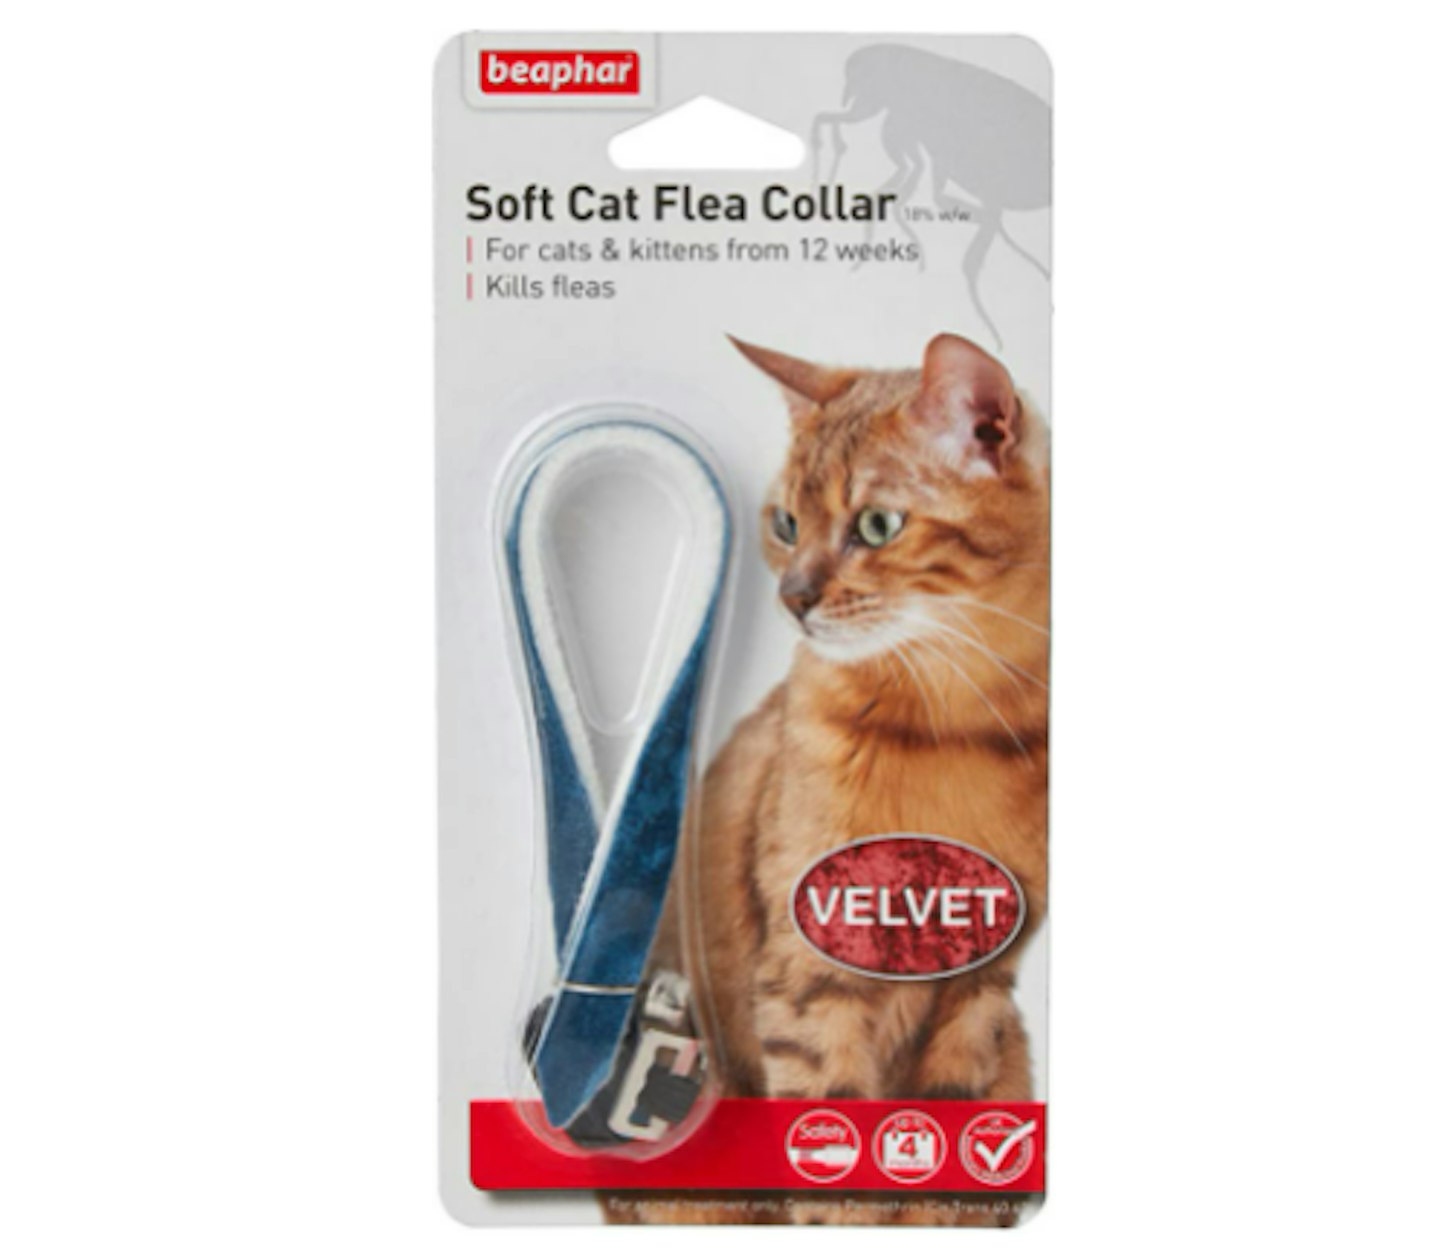 Beaphar Cat Flea Collar Velvet Black, Red or Blue